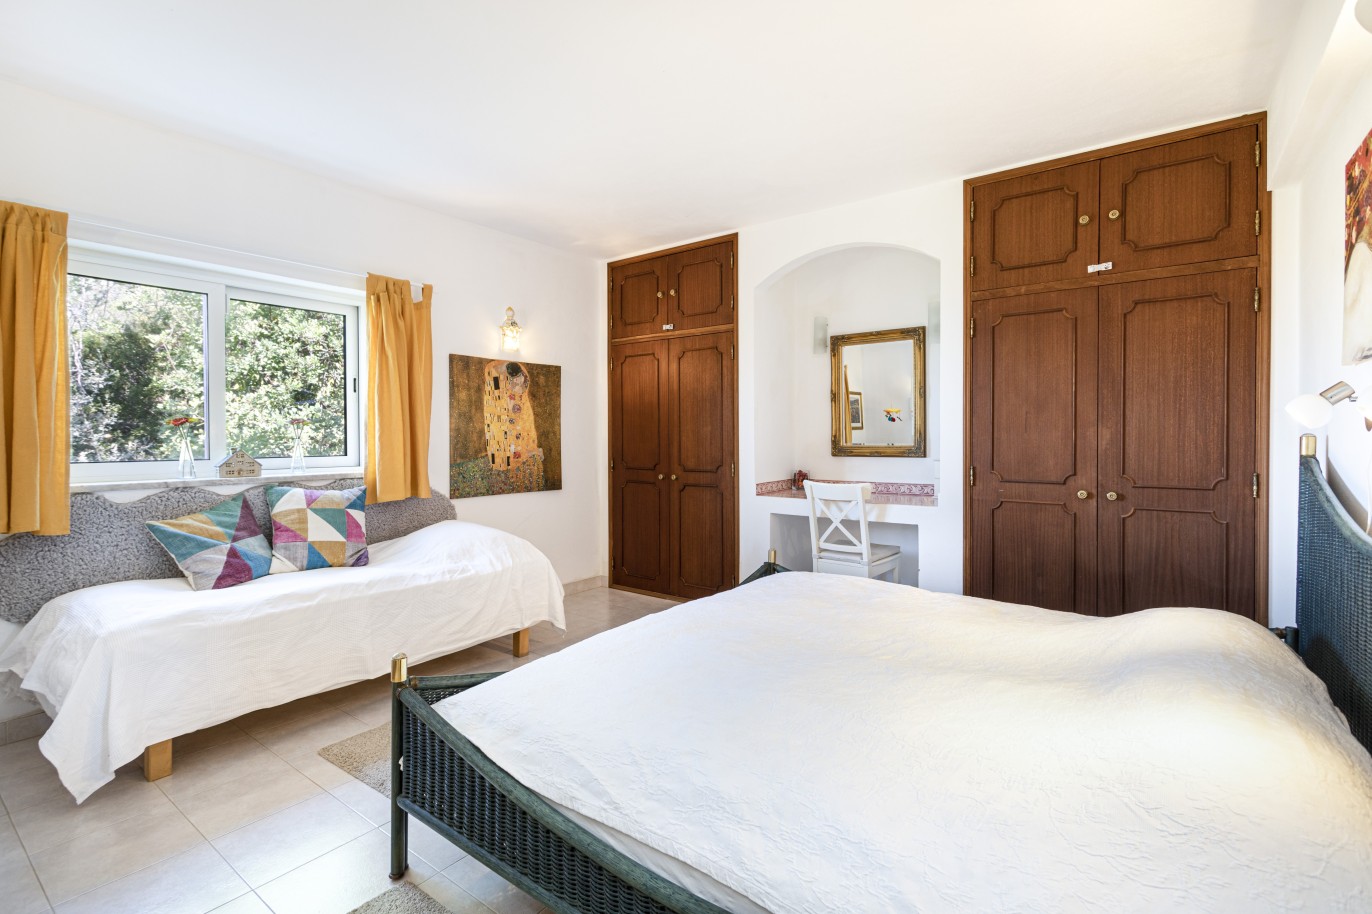 5 bedroom villa with pool and sea view, for sale in Estoi, Algarve_230483